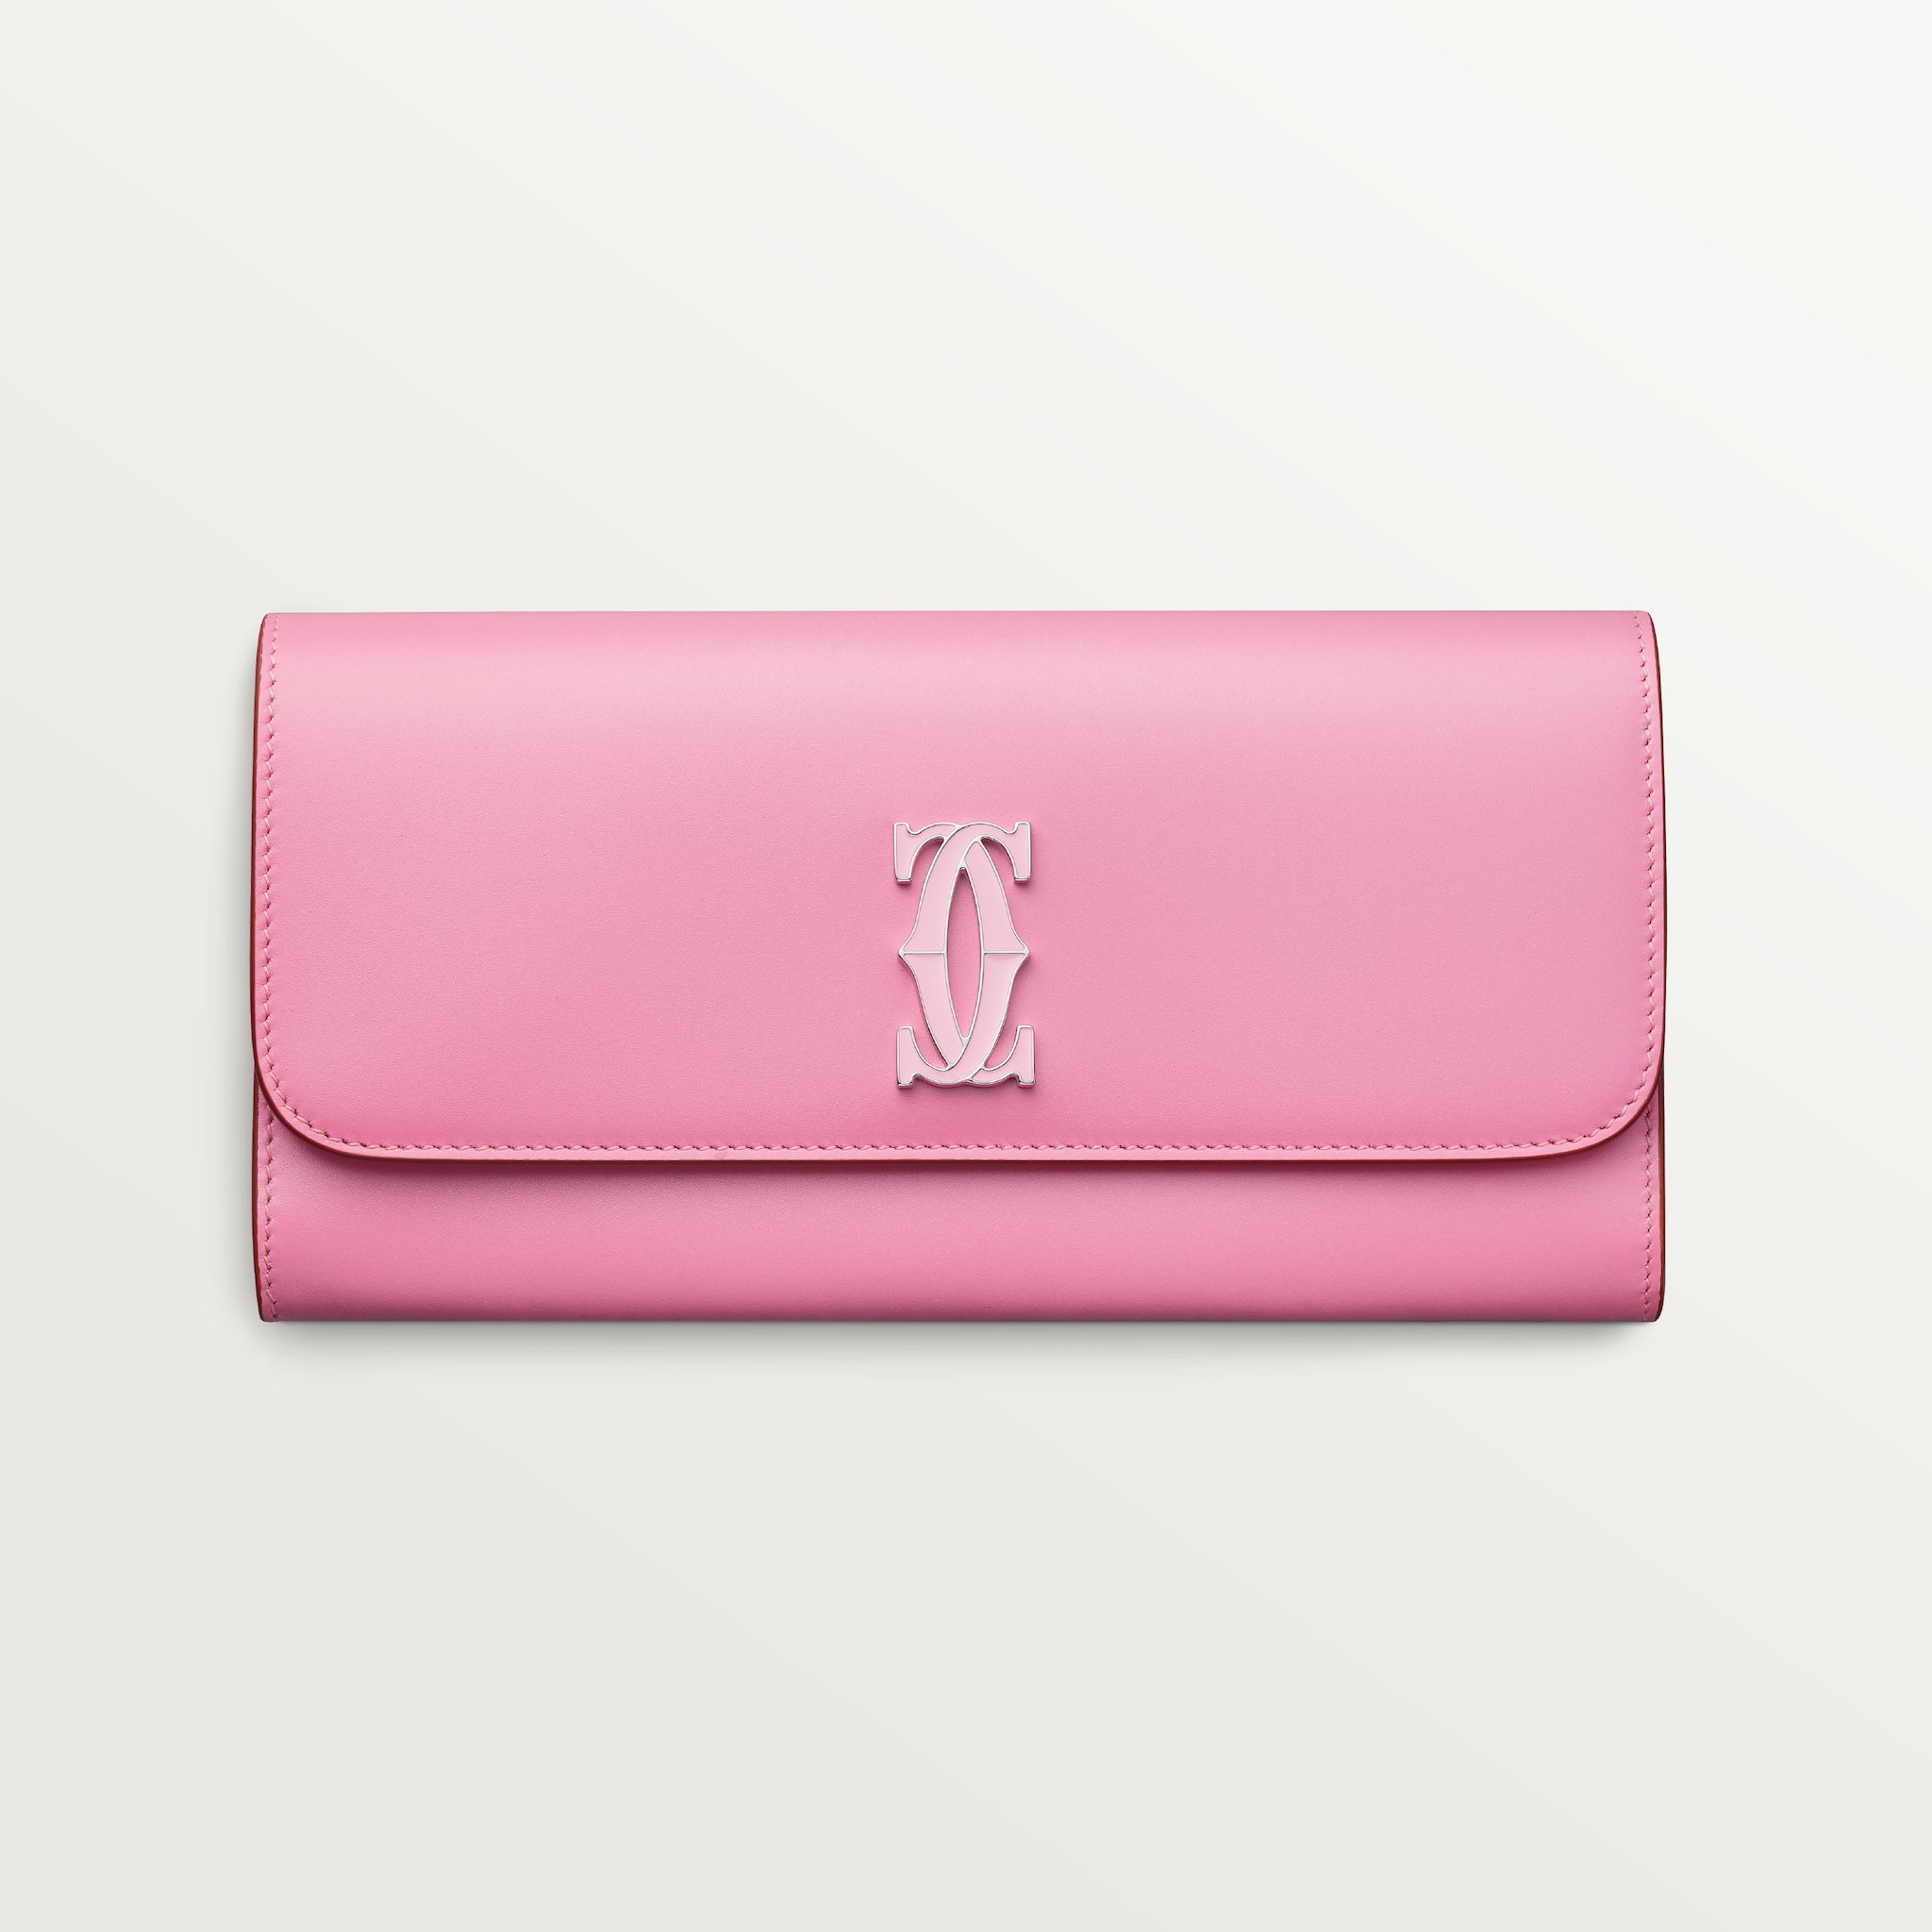 C de Cartier 翻蓋銀包雙色粉紅色/淺粉紅色小牛皮，鍍鈀及淺粉紅色琺瑯飾面